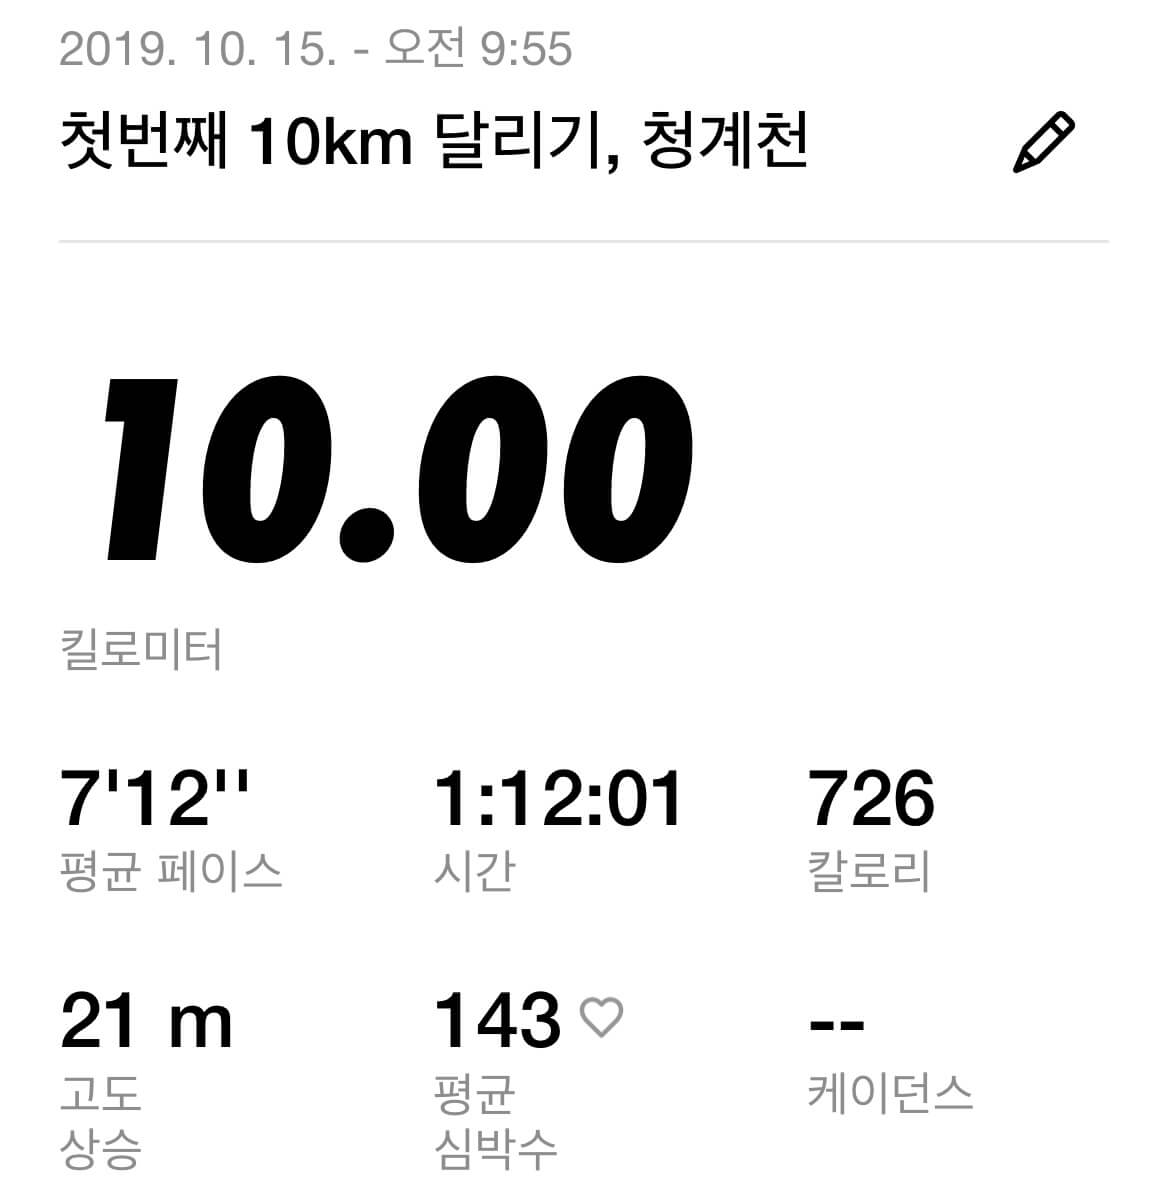 청계천에서 10km 달리기 칼로리 소모